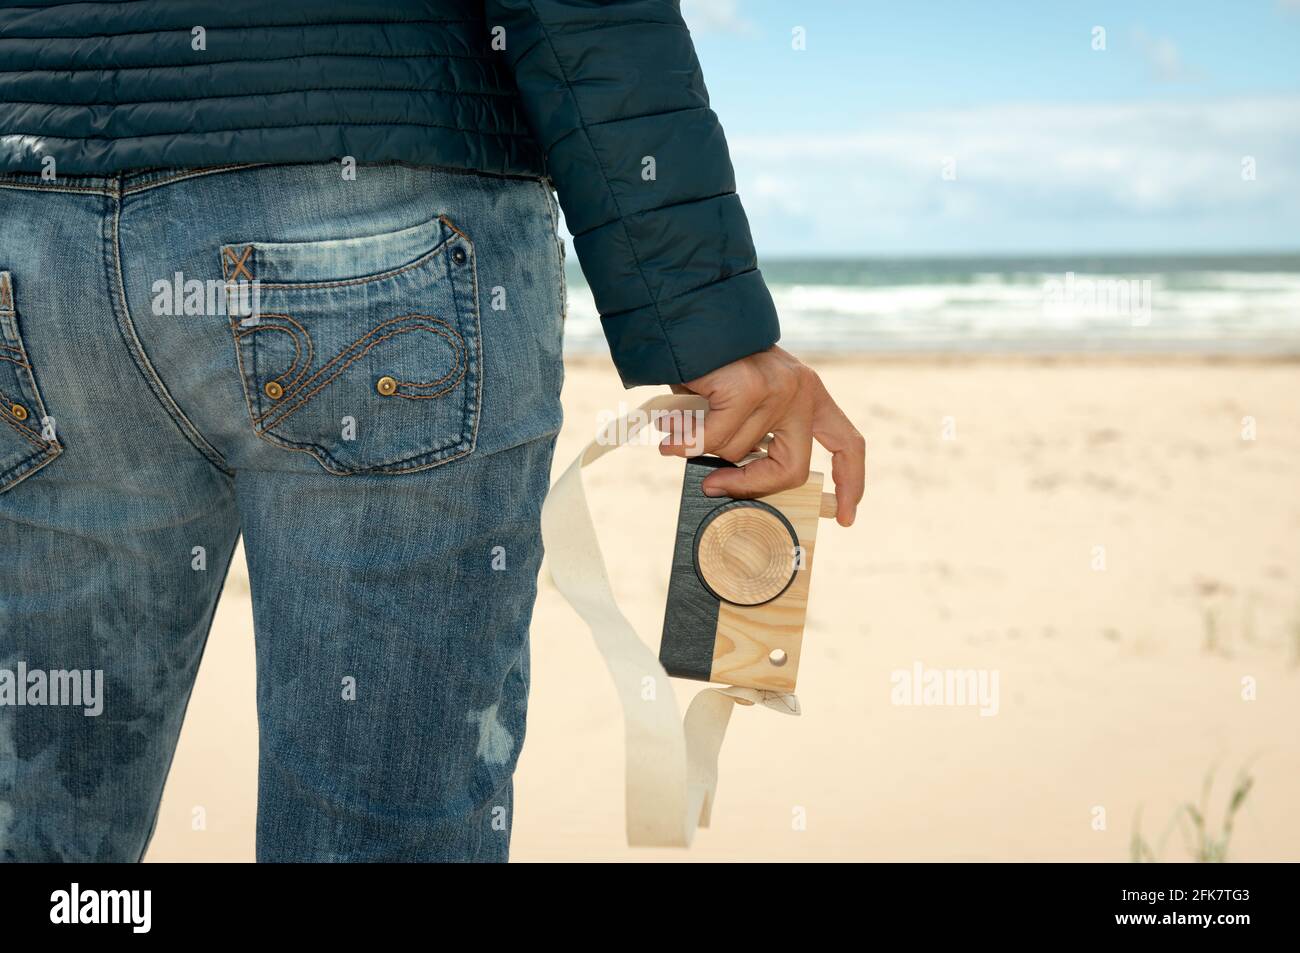 Primo piano della mano della donna che tiene una macchina fotografica giocattolo di legno sullo sfondo della spiaggia sabbiosa. Concetto di fotografia divertente. Foto Stock